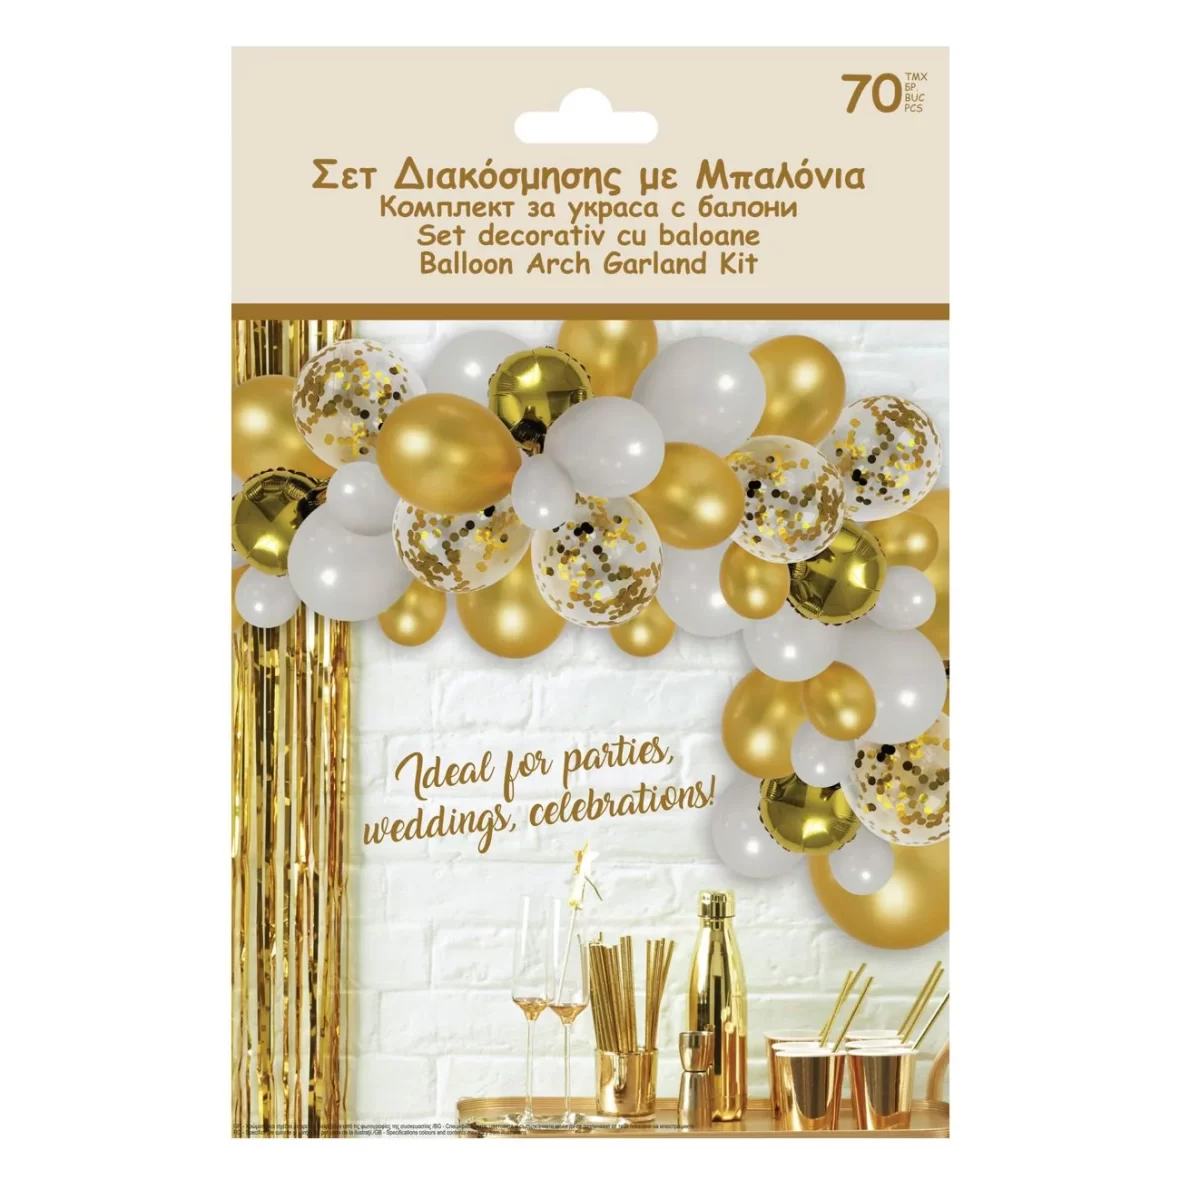 Arcada baloane aniversare petrecere, culori auriu si alb, cu baloane confetti